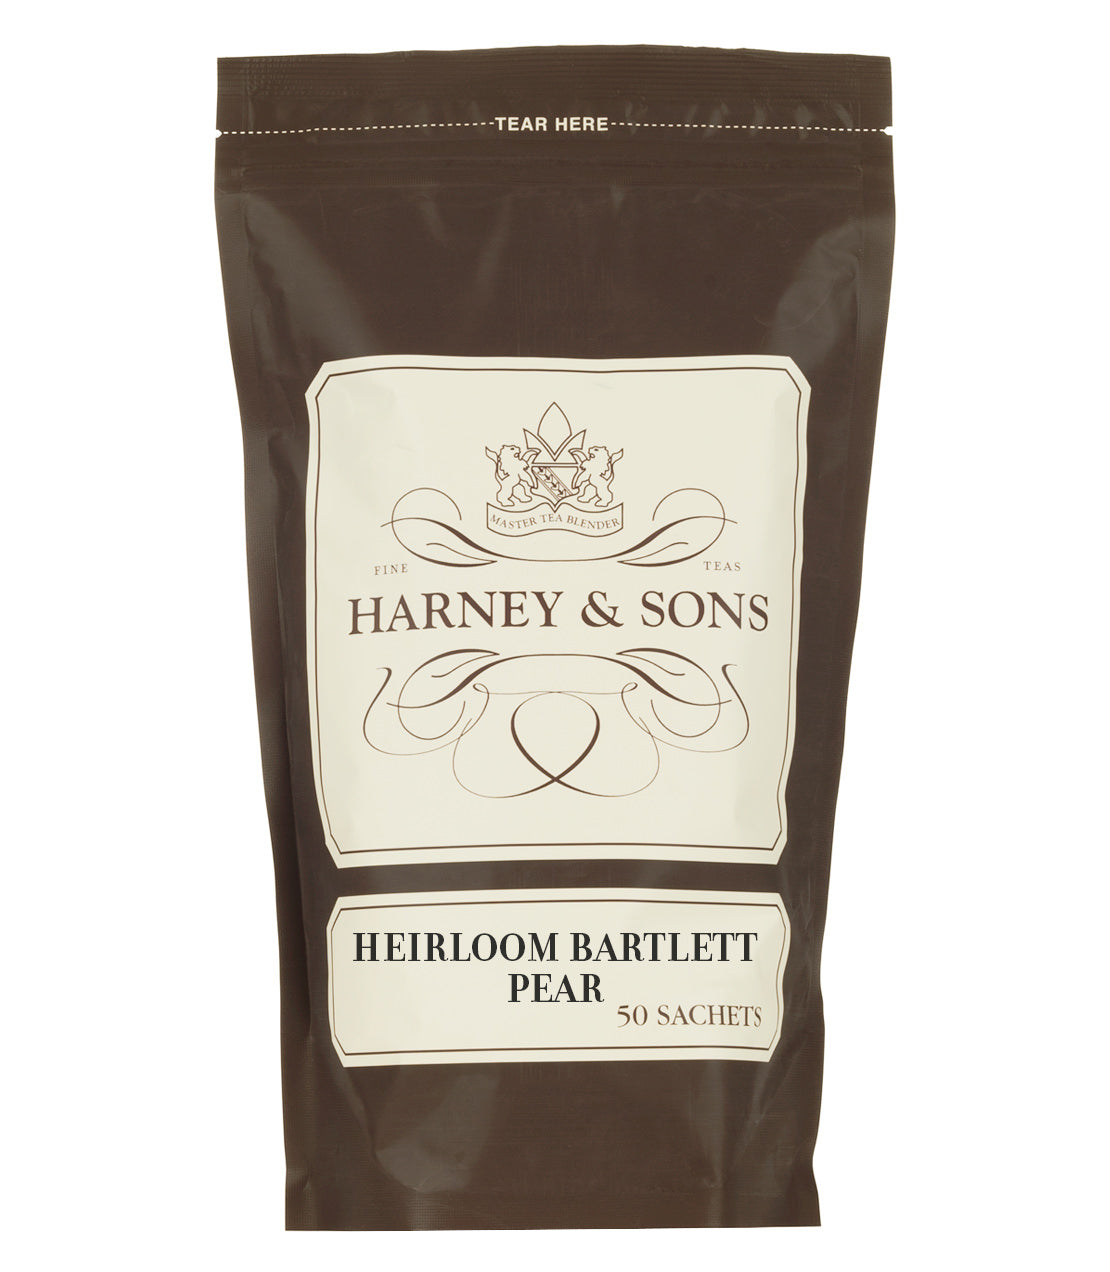 Heirloom Bartlett Pear - Sachets Bag of 50 Sachets - Harney & Sons Fine Teas